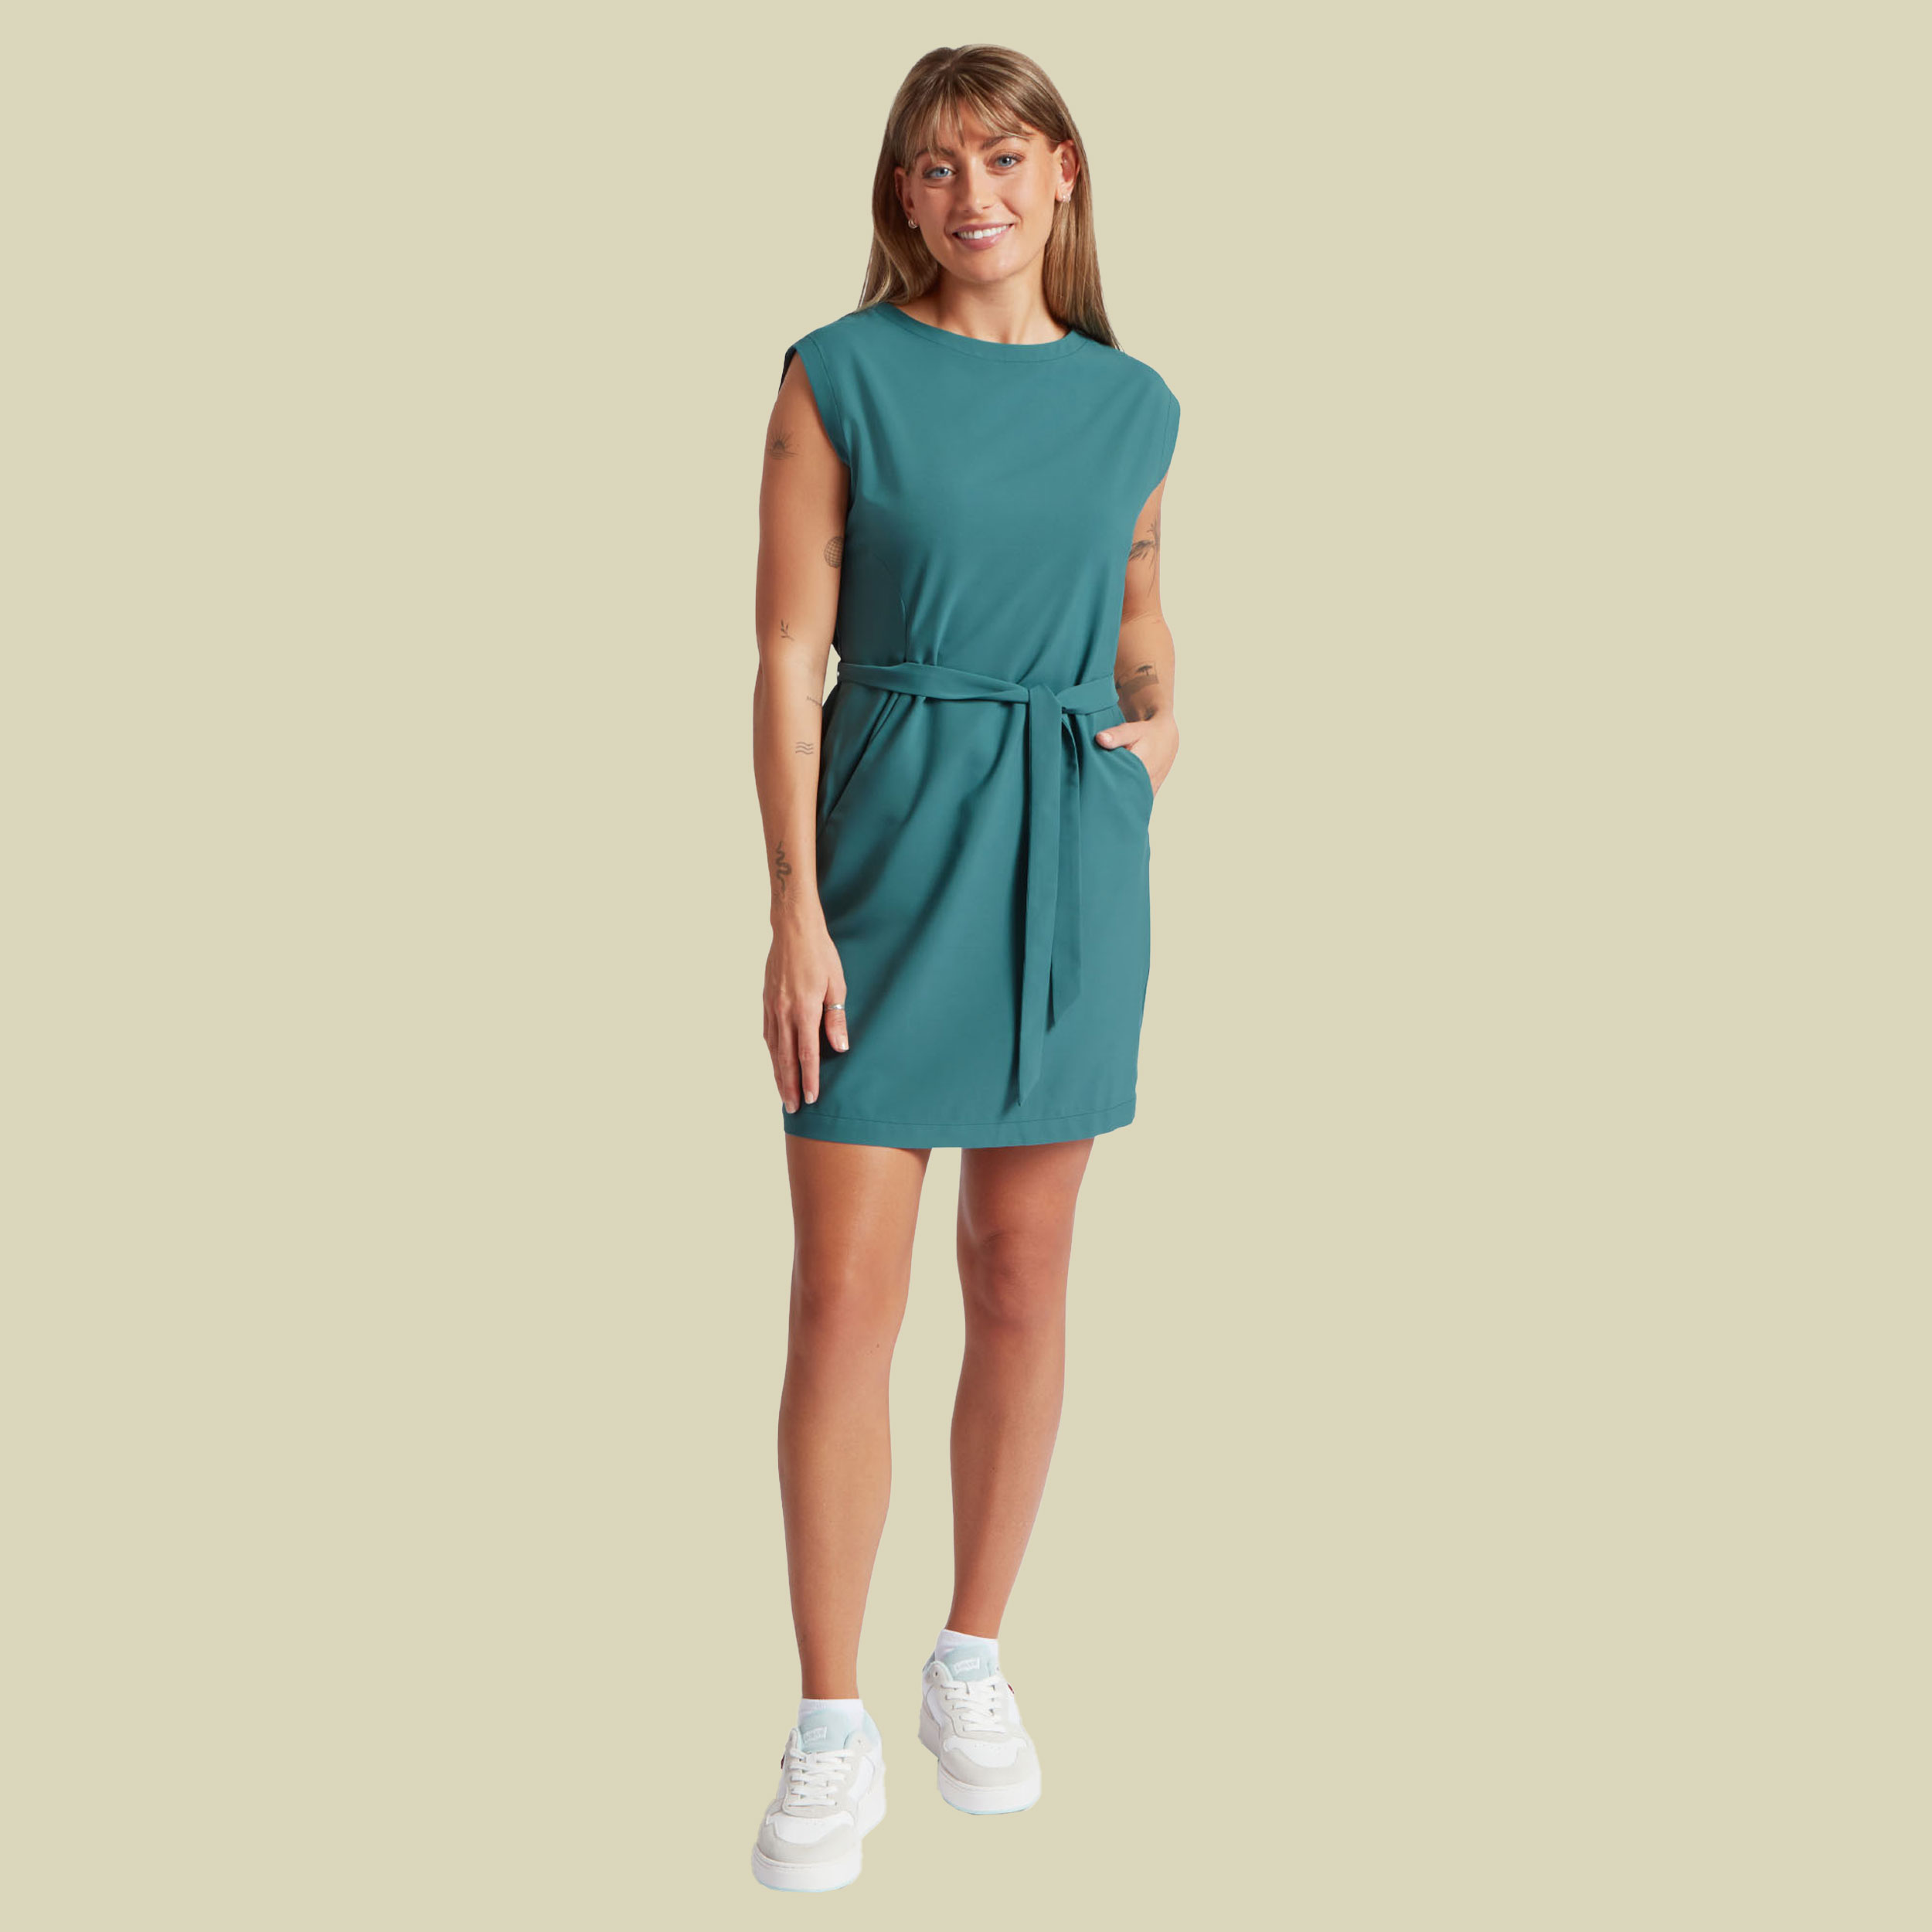 Sajilo Travel Dress L grün - Farbe hydra